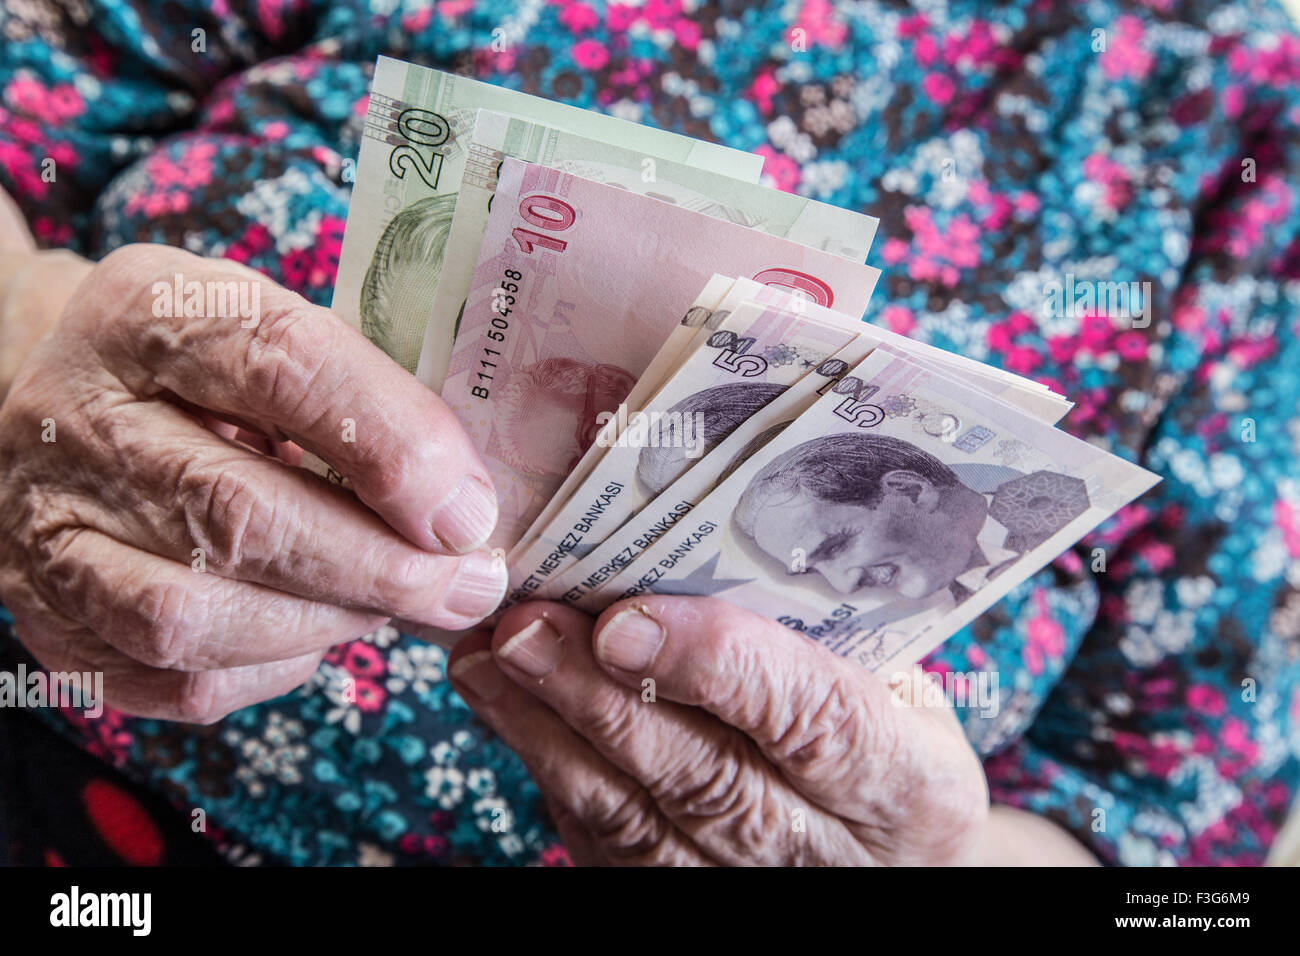 counting money (turkish lira) Stock Photo